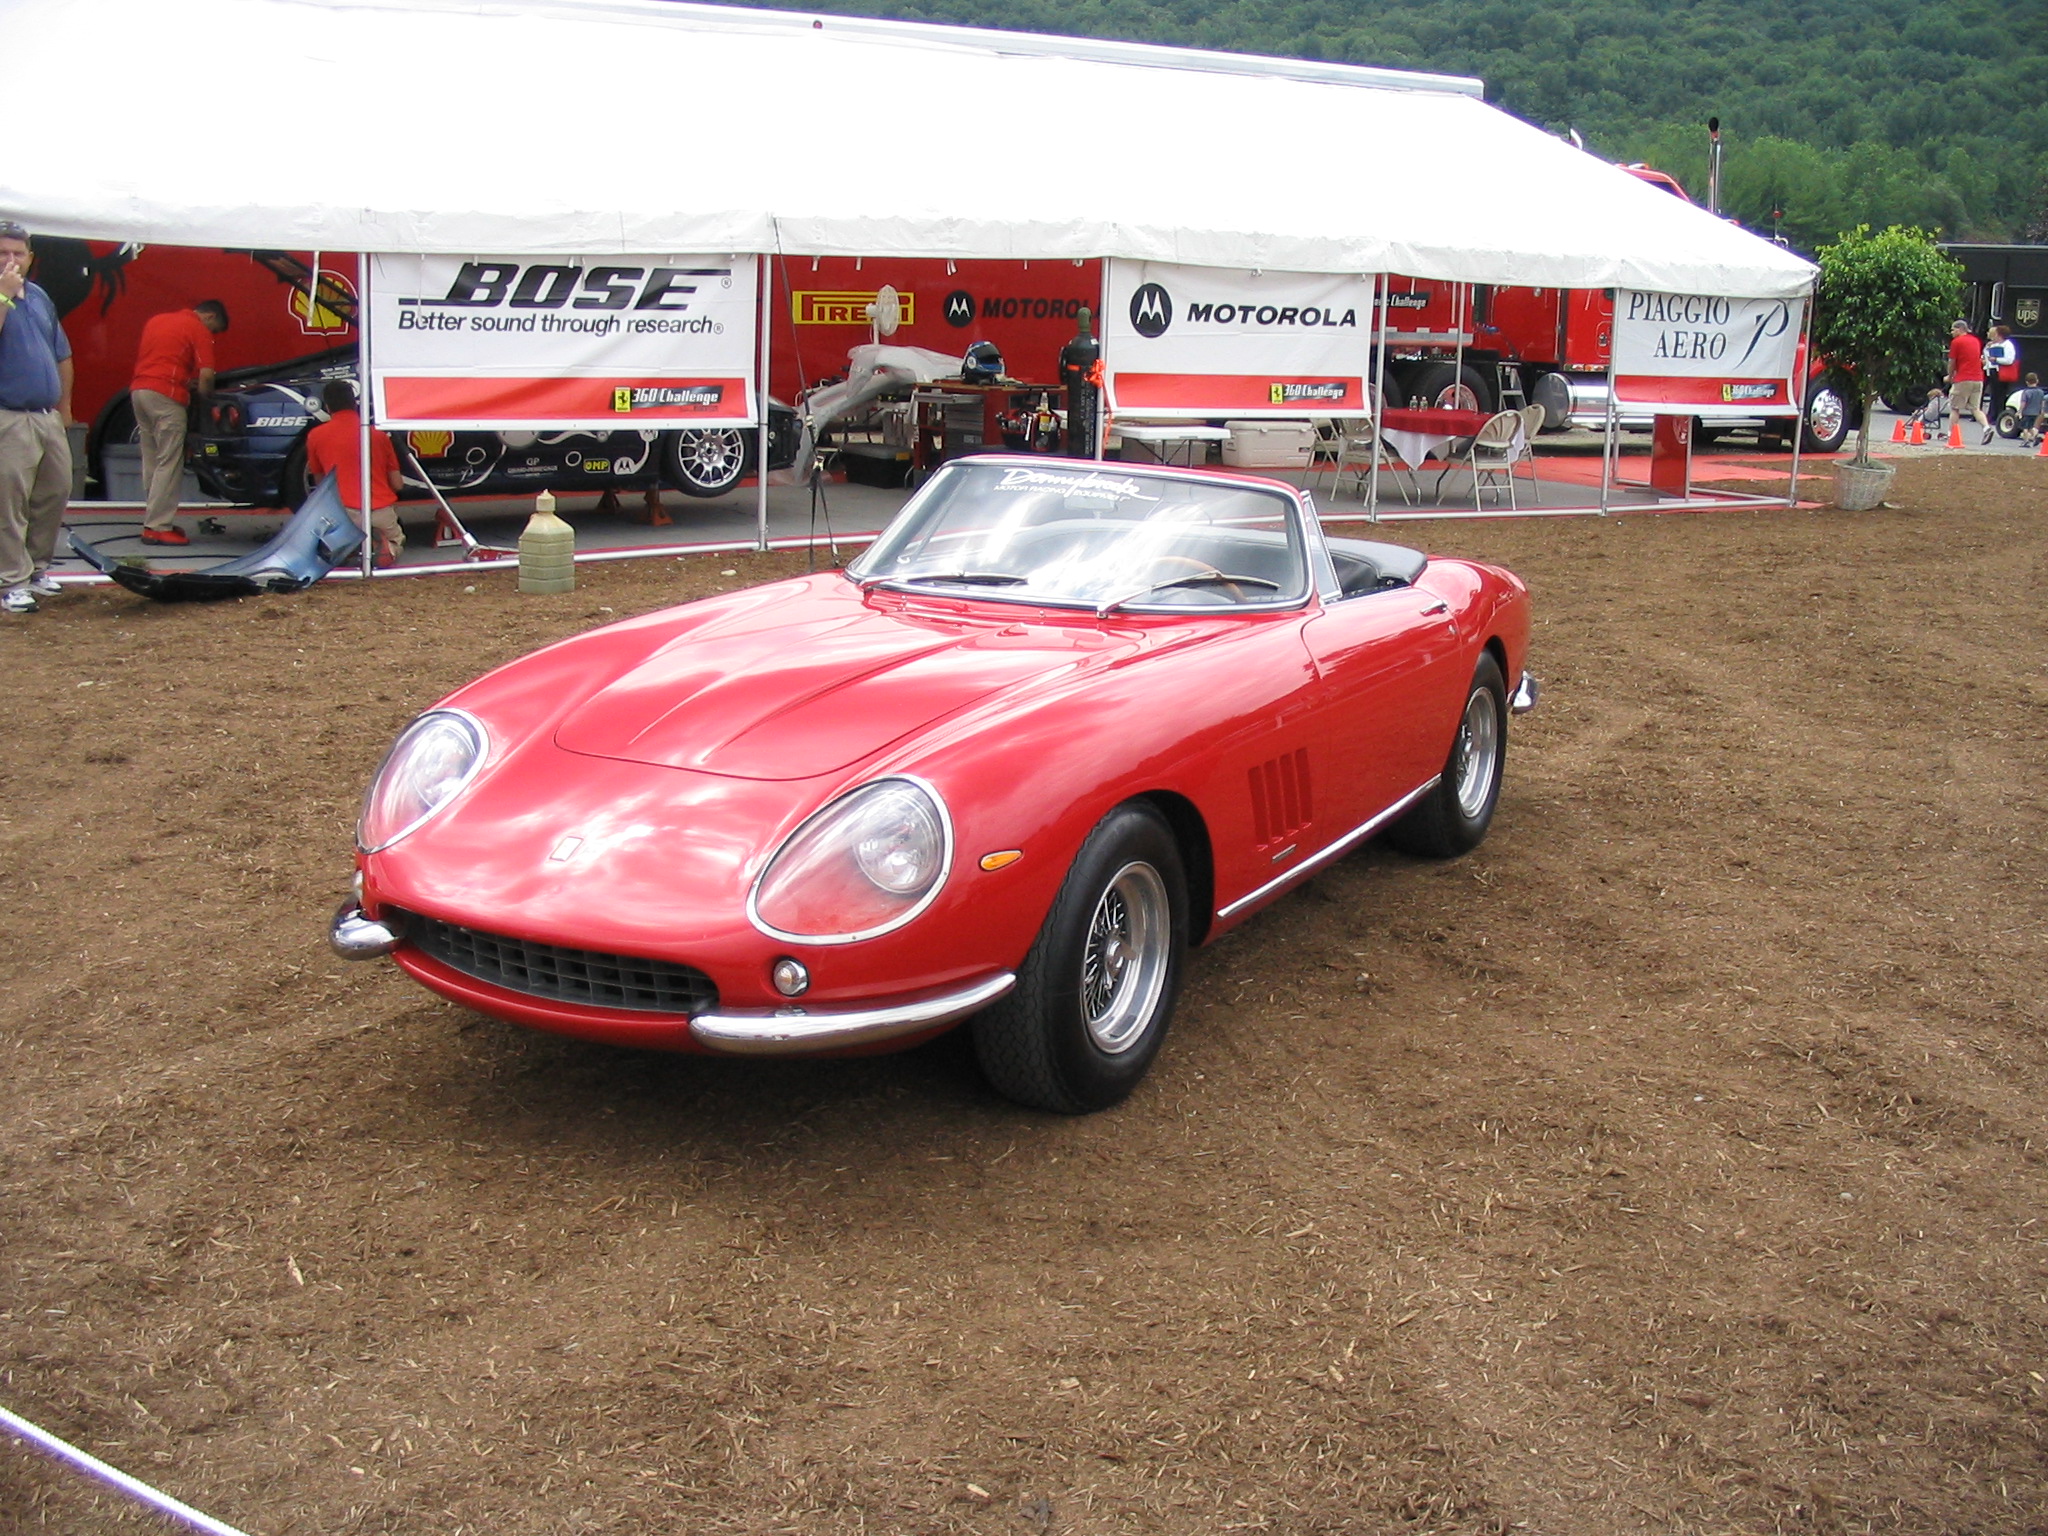 Ferrari 275 GTB 4